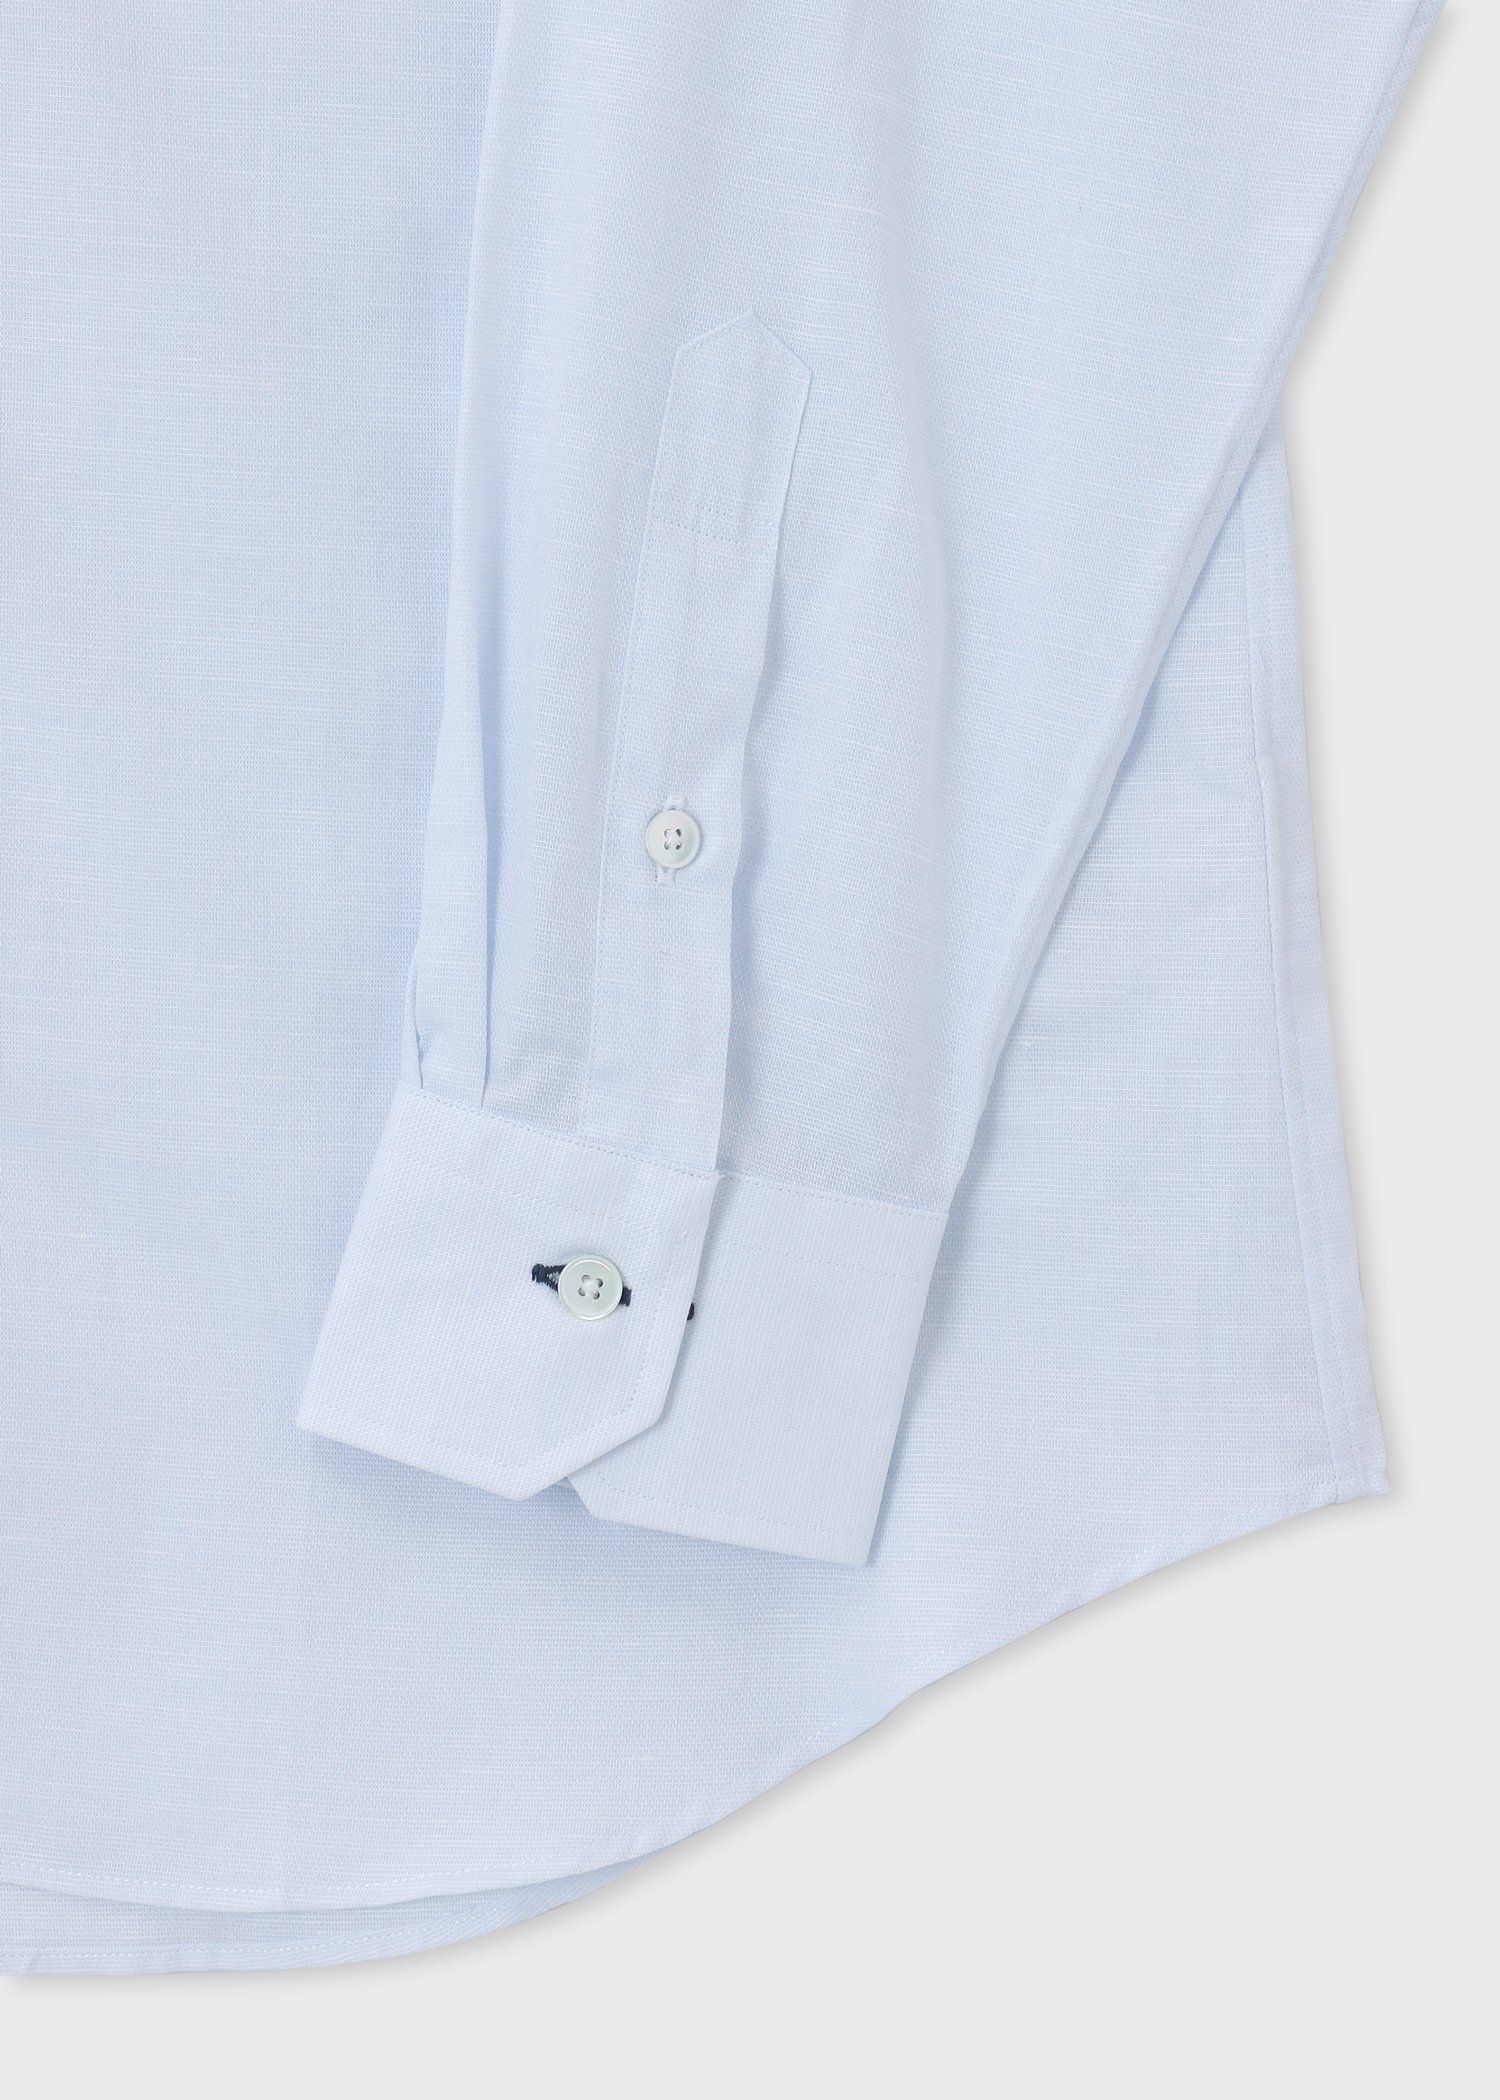 ポールスミス 金ボタン ペイズリー フローラル 刺繍 ドレスシャツ 日本製身幅56